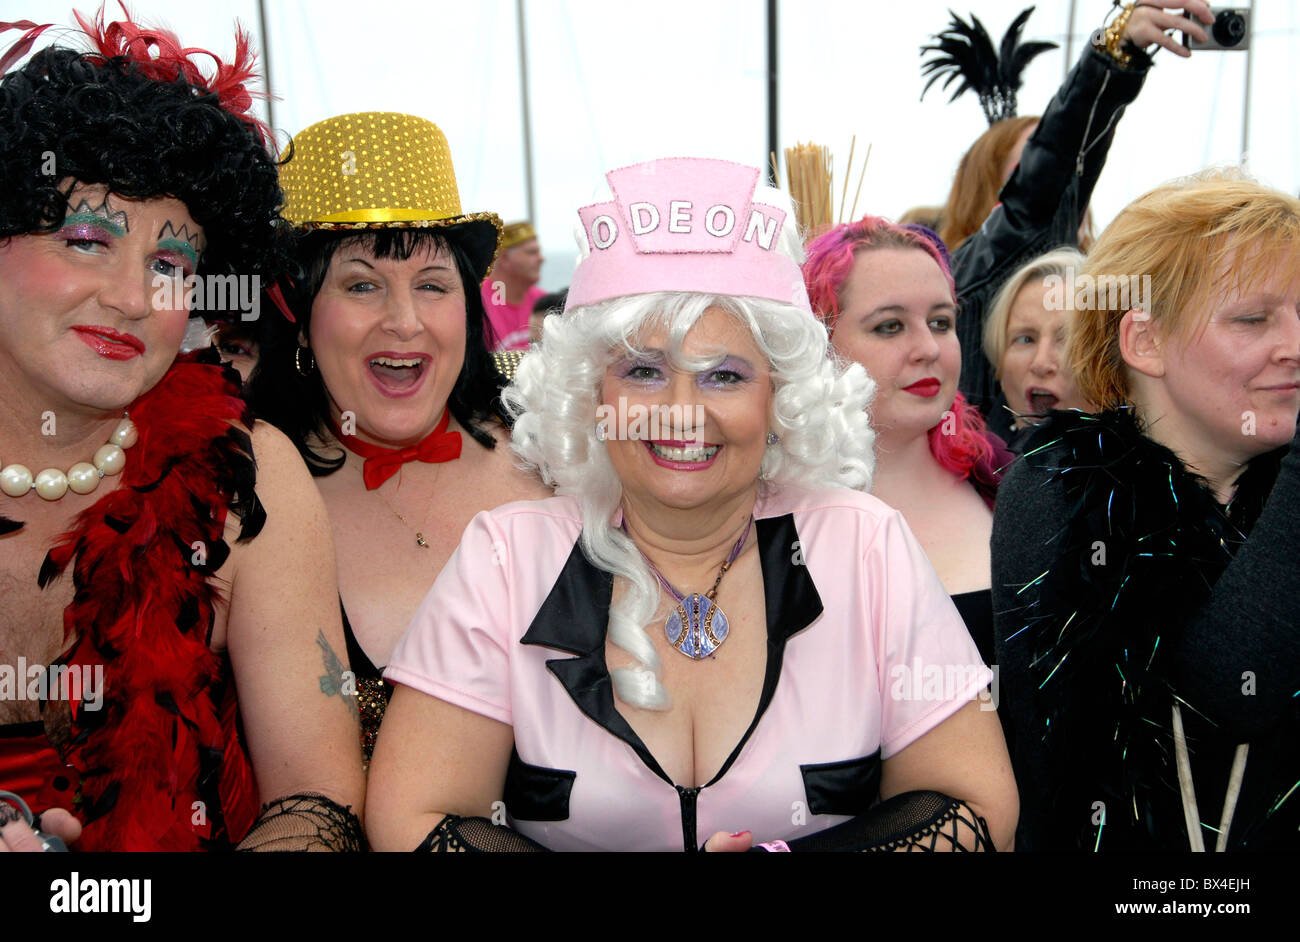 Ventilatori in costume da The Rocky Horror Show tentativo di battere il record mondiale per la maggior parte dei ballerini alterando il tempo, Brighton, Regno Unito Foto Stock